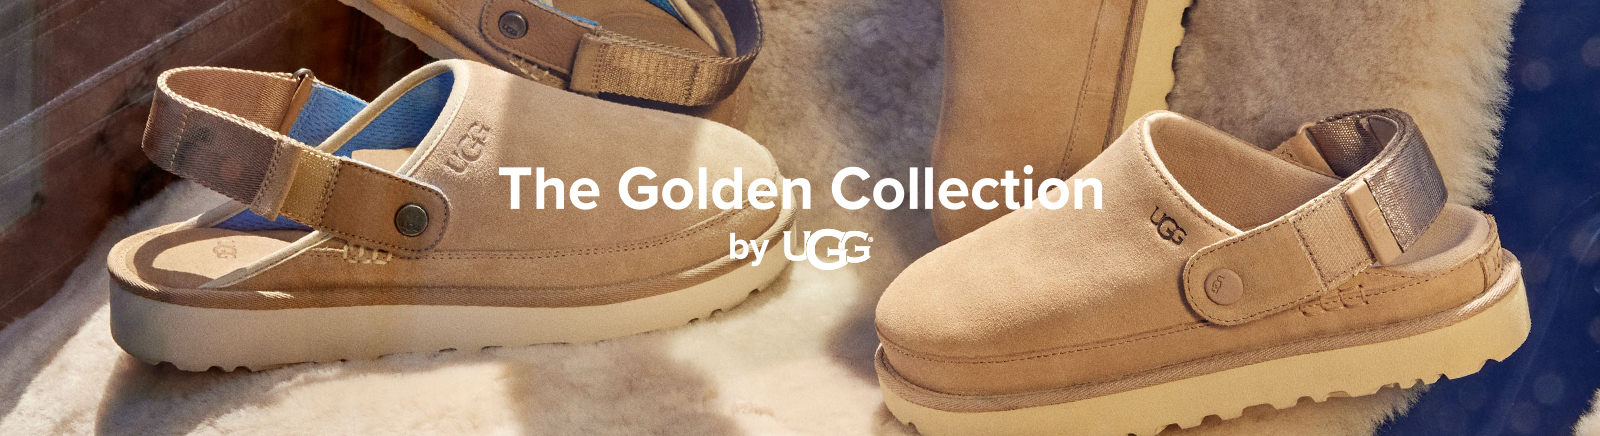 UGG Damen Schuhe kaufen &#9658; bequem online bei Prange